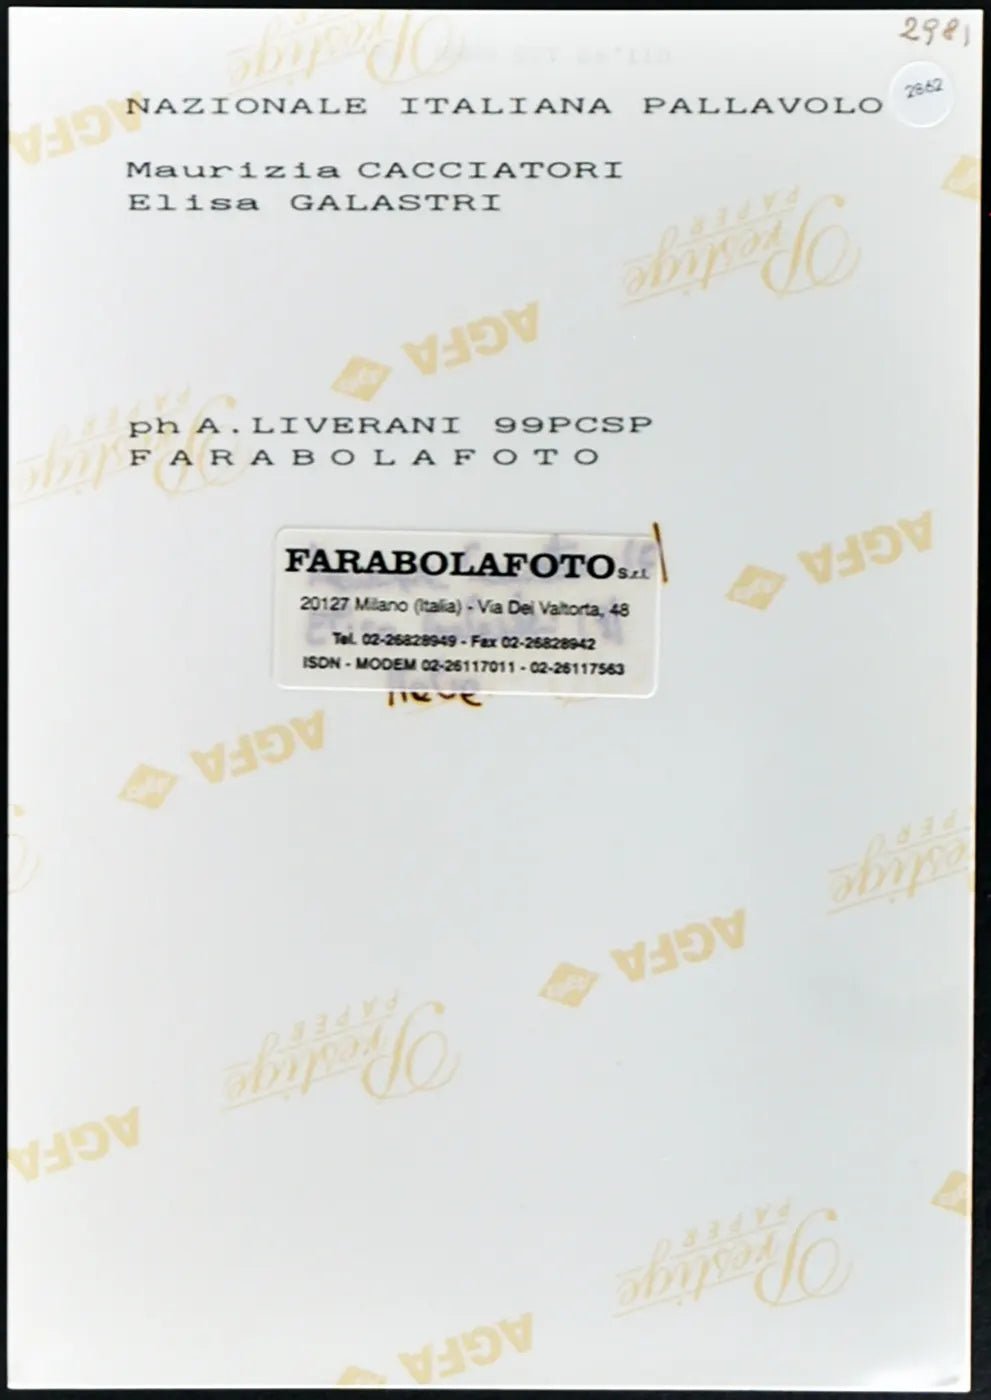 Cacciatori e Galastri Italia Volley 1999 Ft 2862 - Stampa 20x15 cm - Farabola Stampa ai sali d'argento